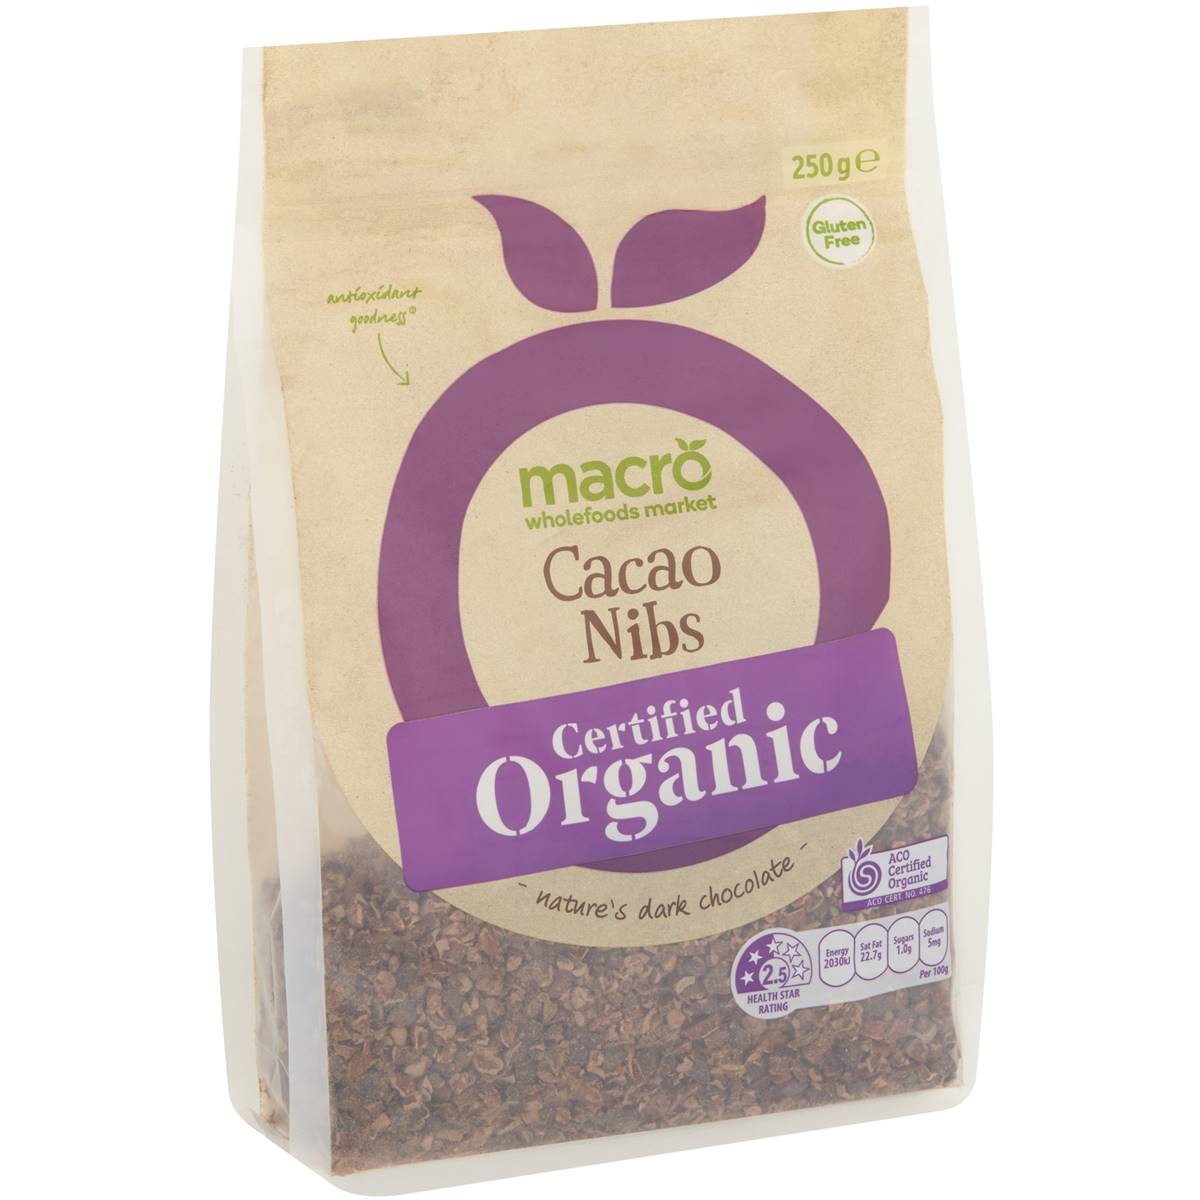 Calories in Macro Organic Cacao Nibs Cacao Nibs